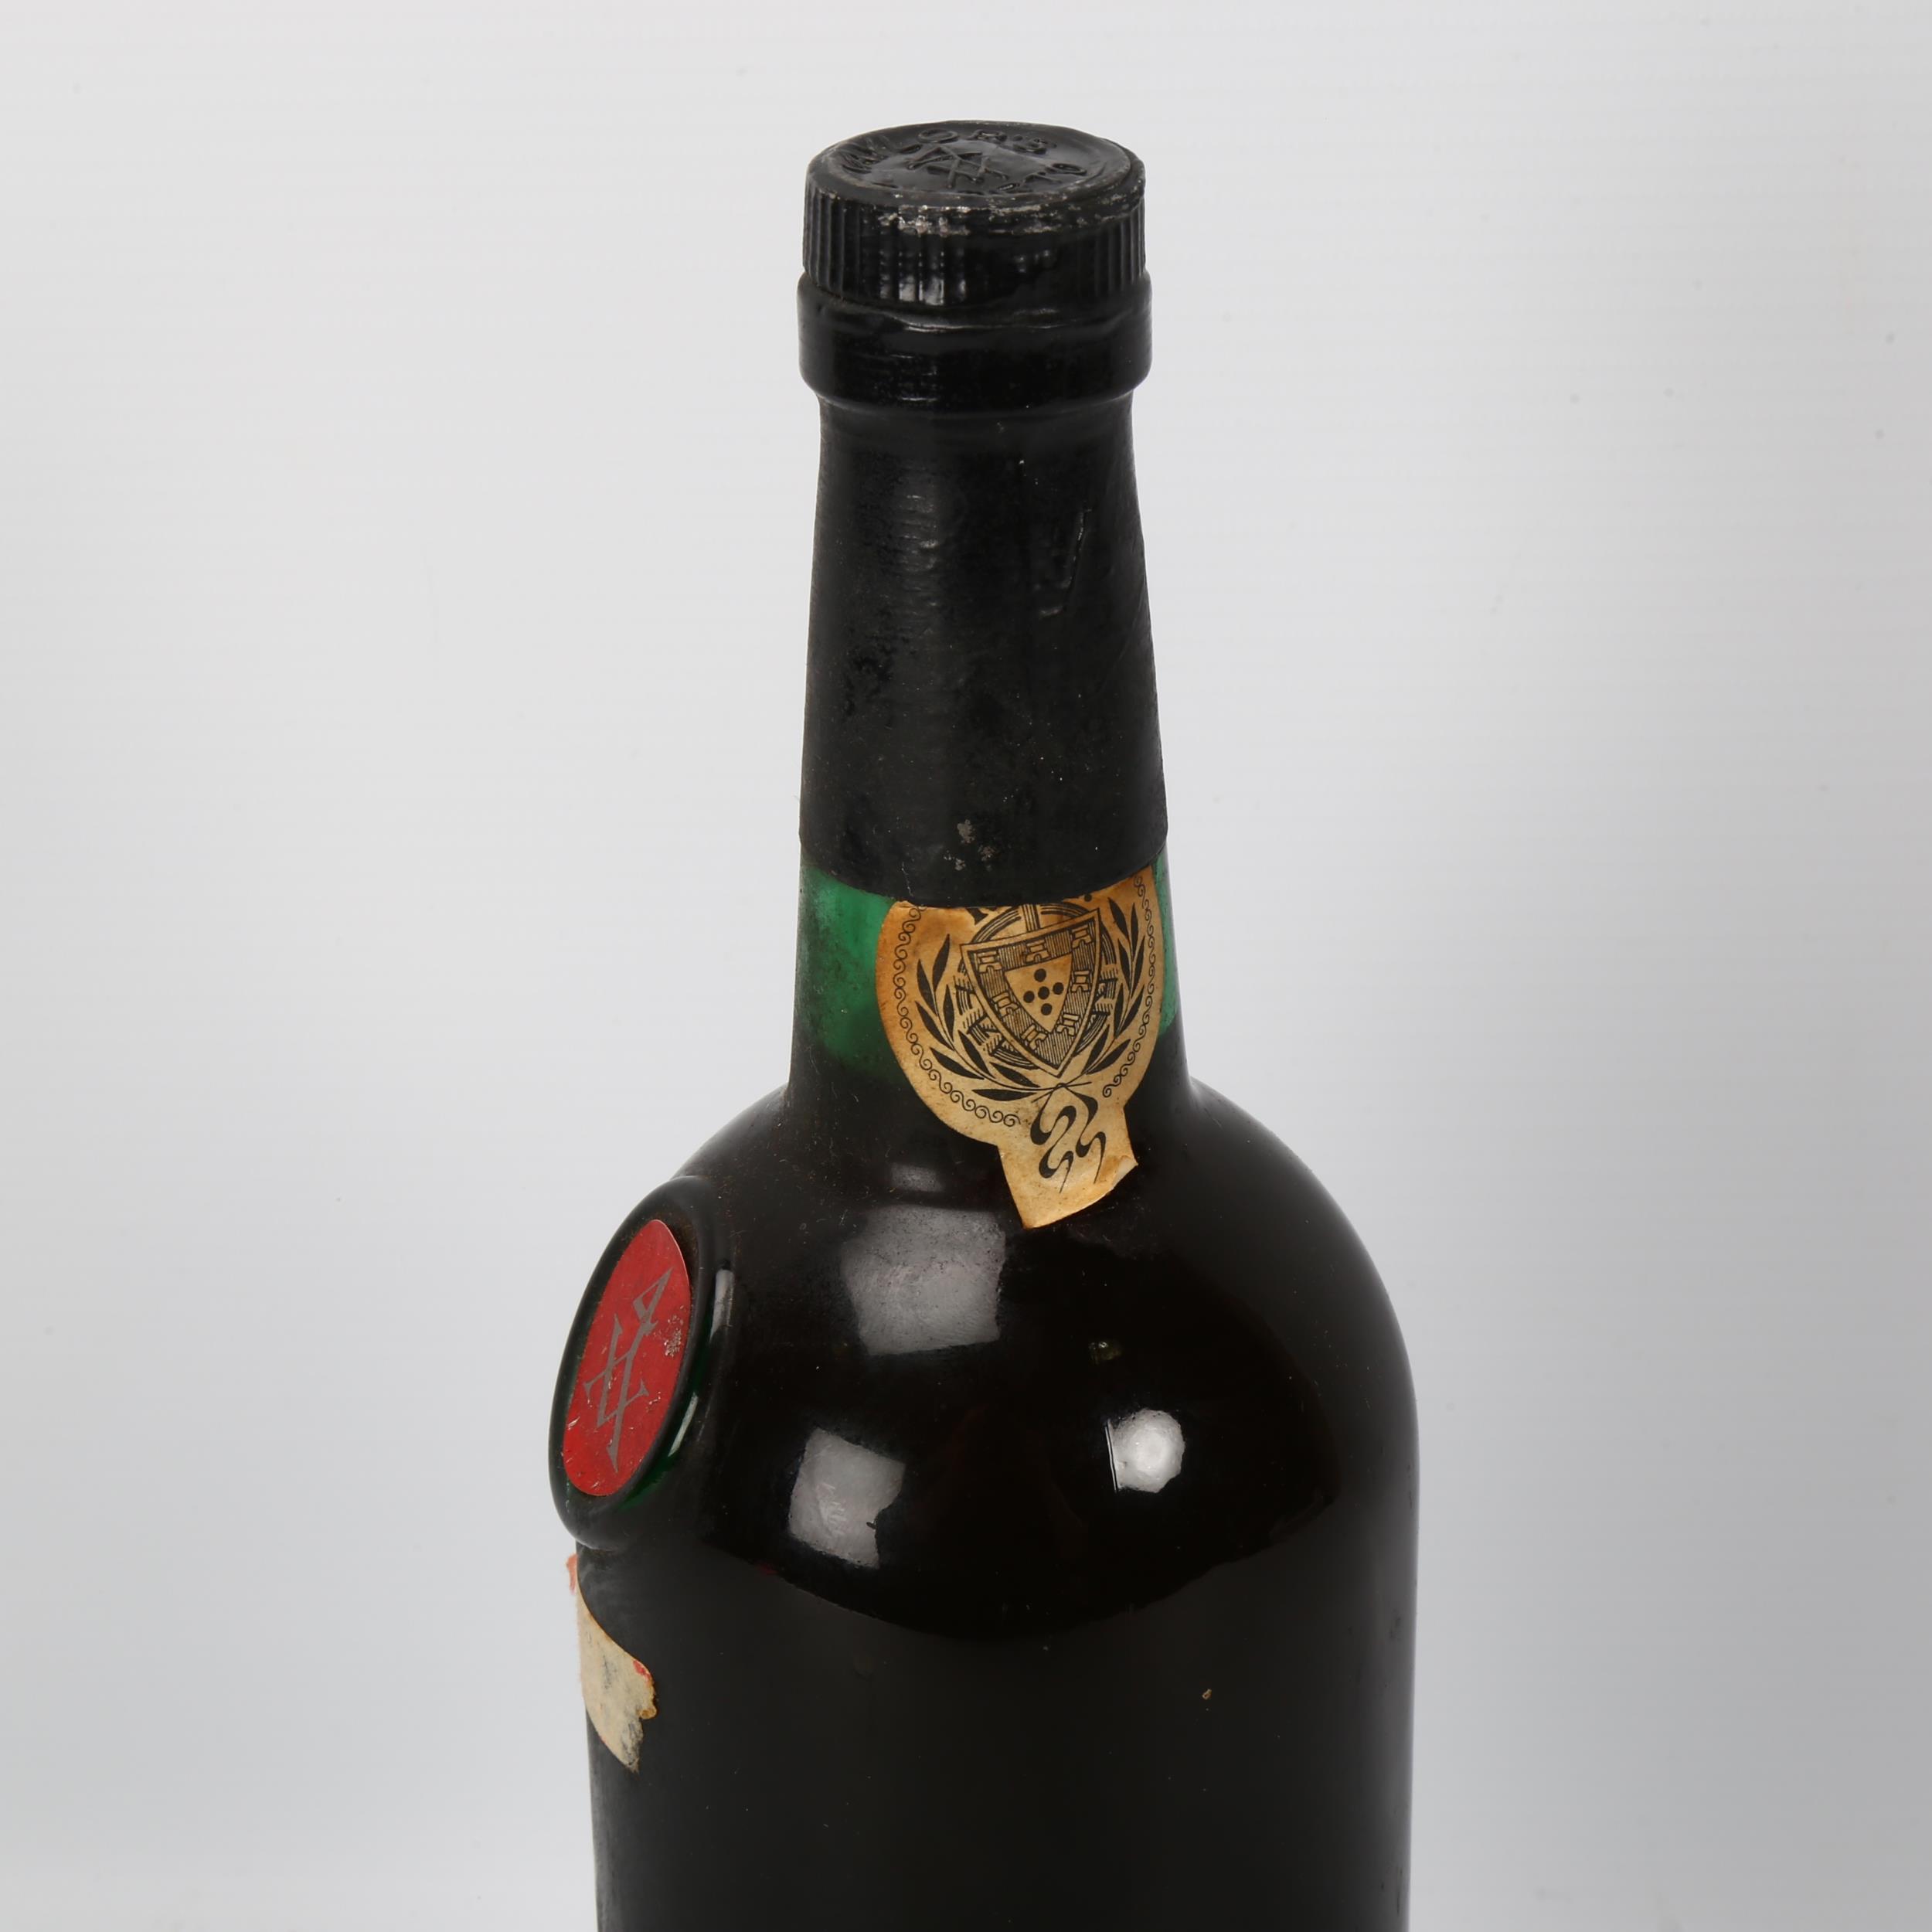 A bottle of Taylors 1969 Late Bottled Vintage Port - Image 2 of 3